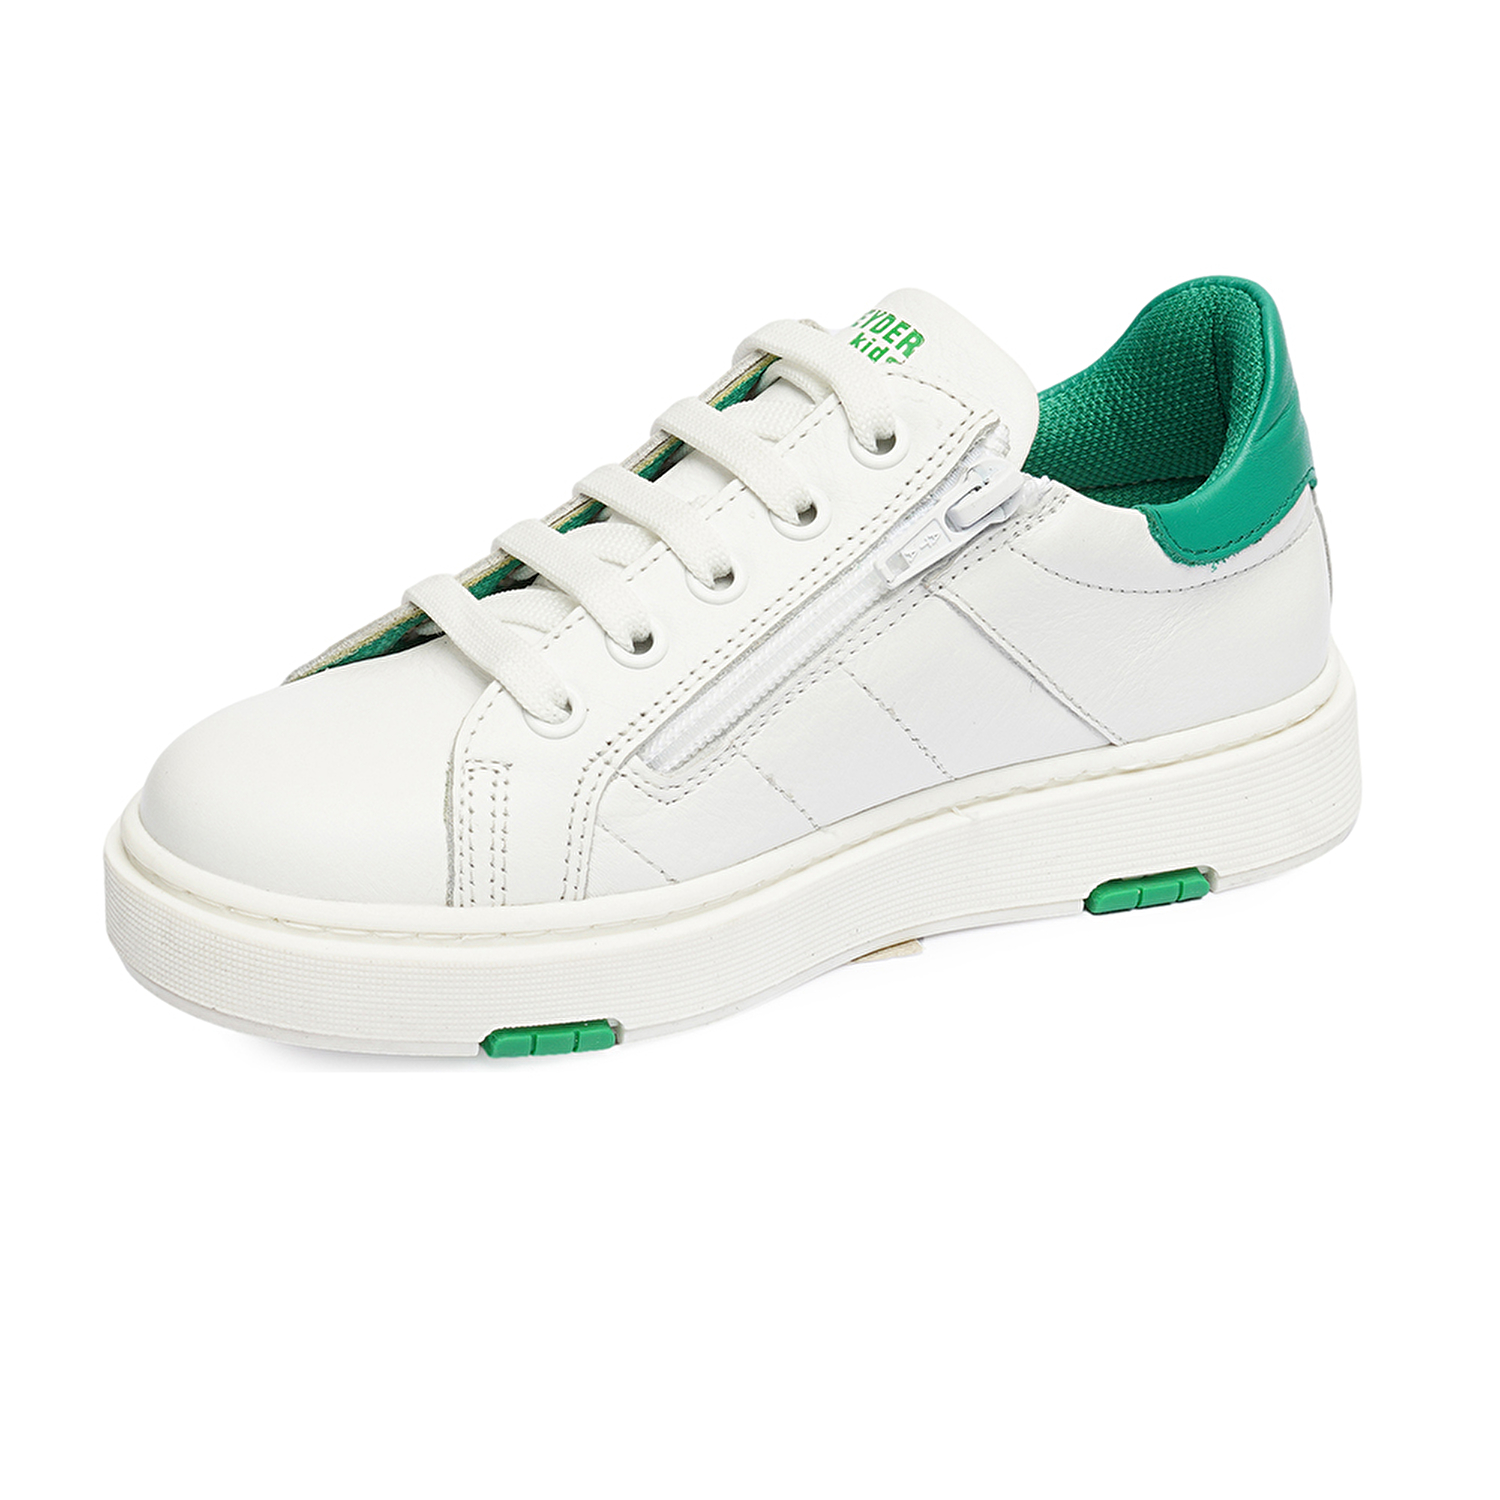 Erkek Çocuk Beyaz Yeşil Hakiki Deri Sneaker Ayakkabı 4Y5NA59501-2